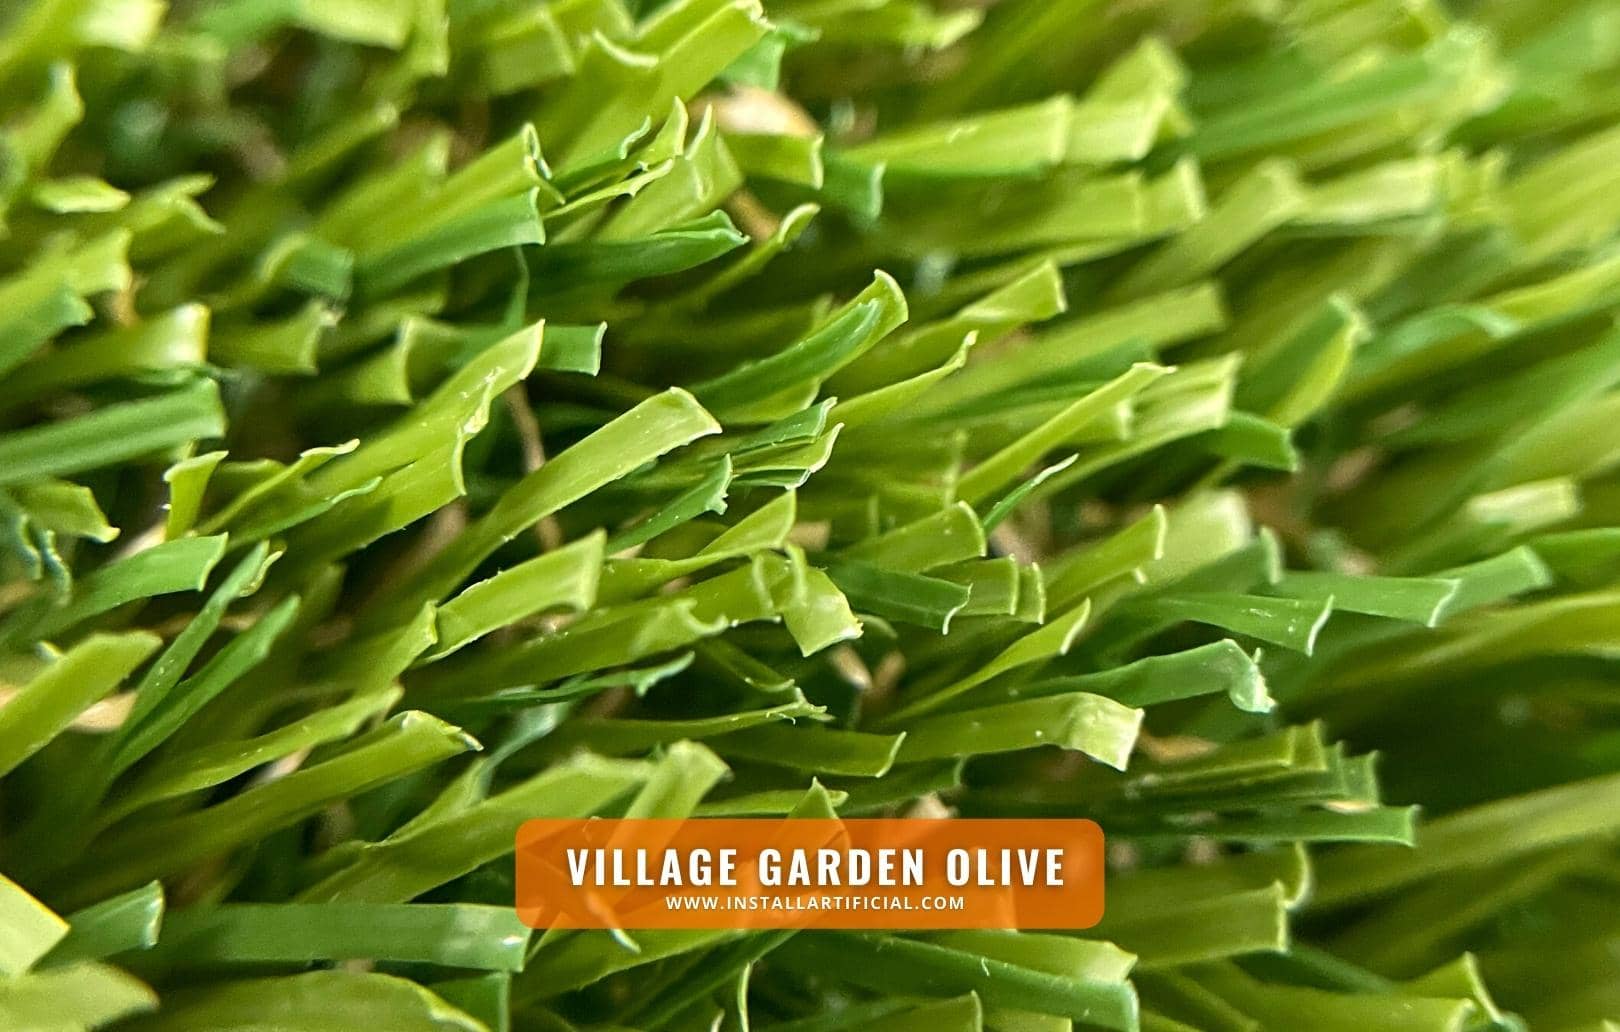 Village Garden Olive, Shawgrass, macro